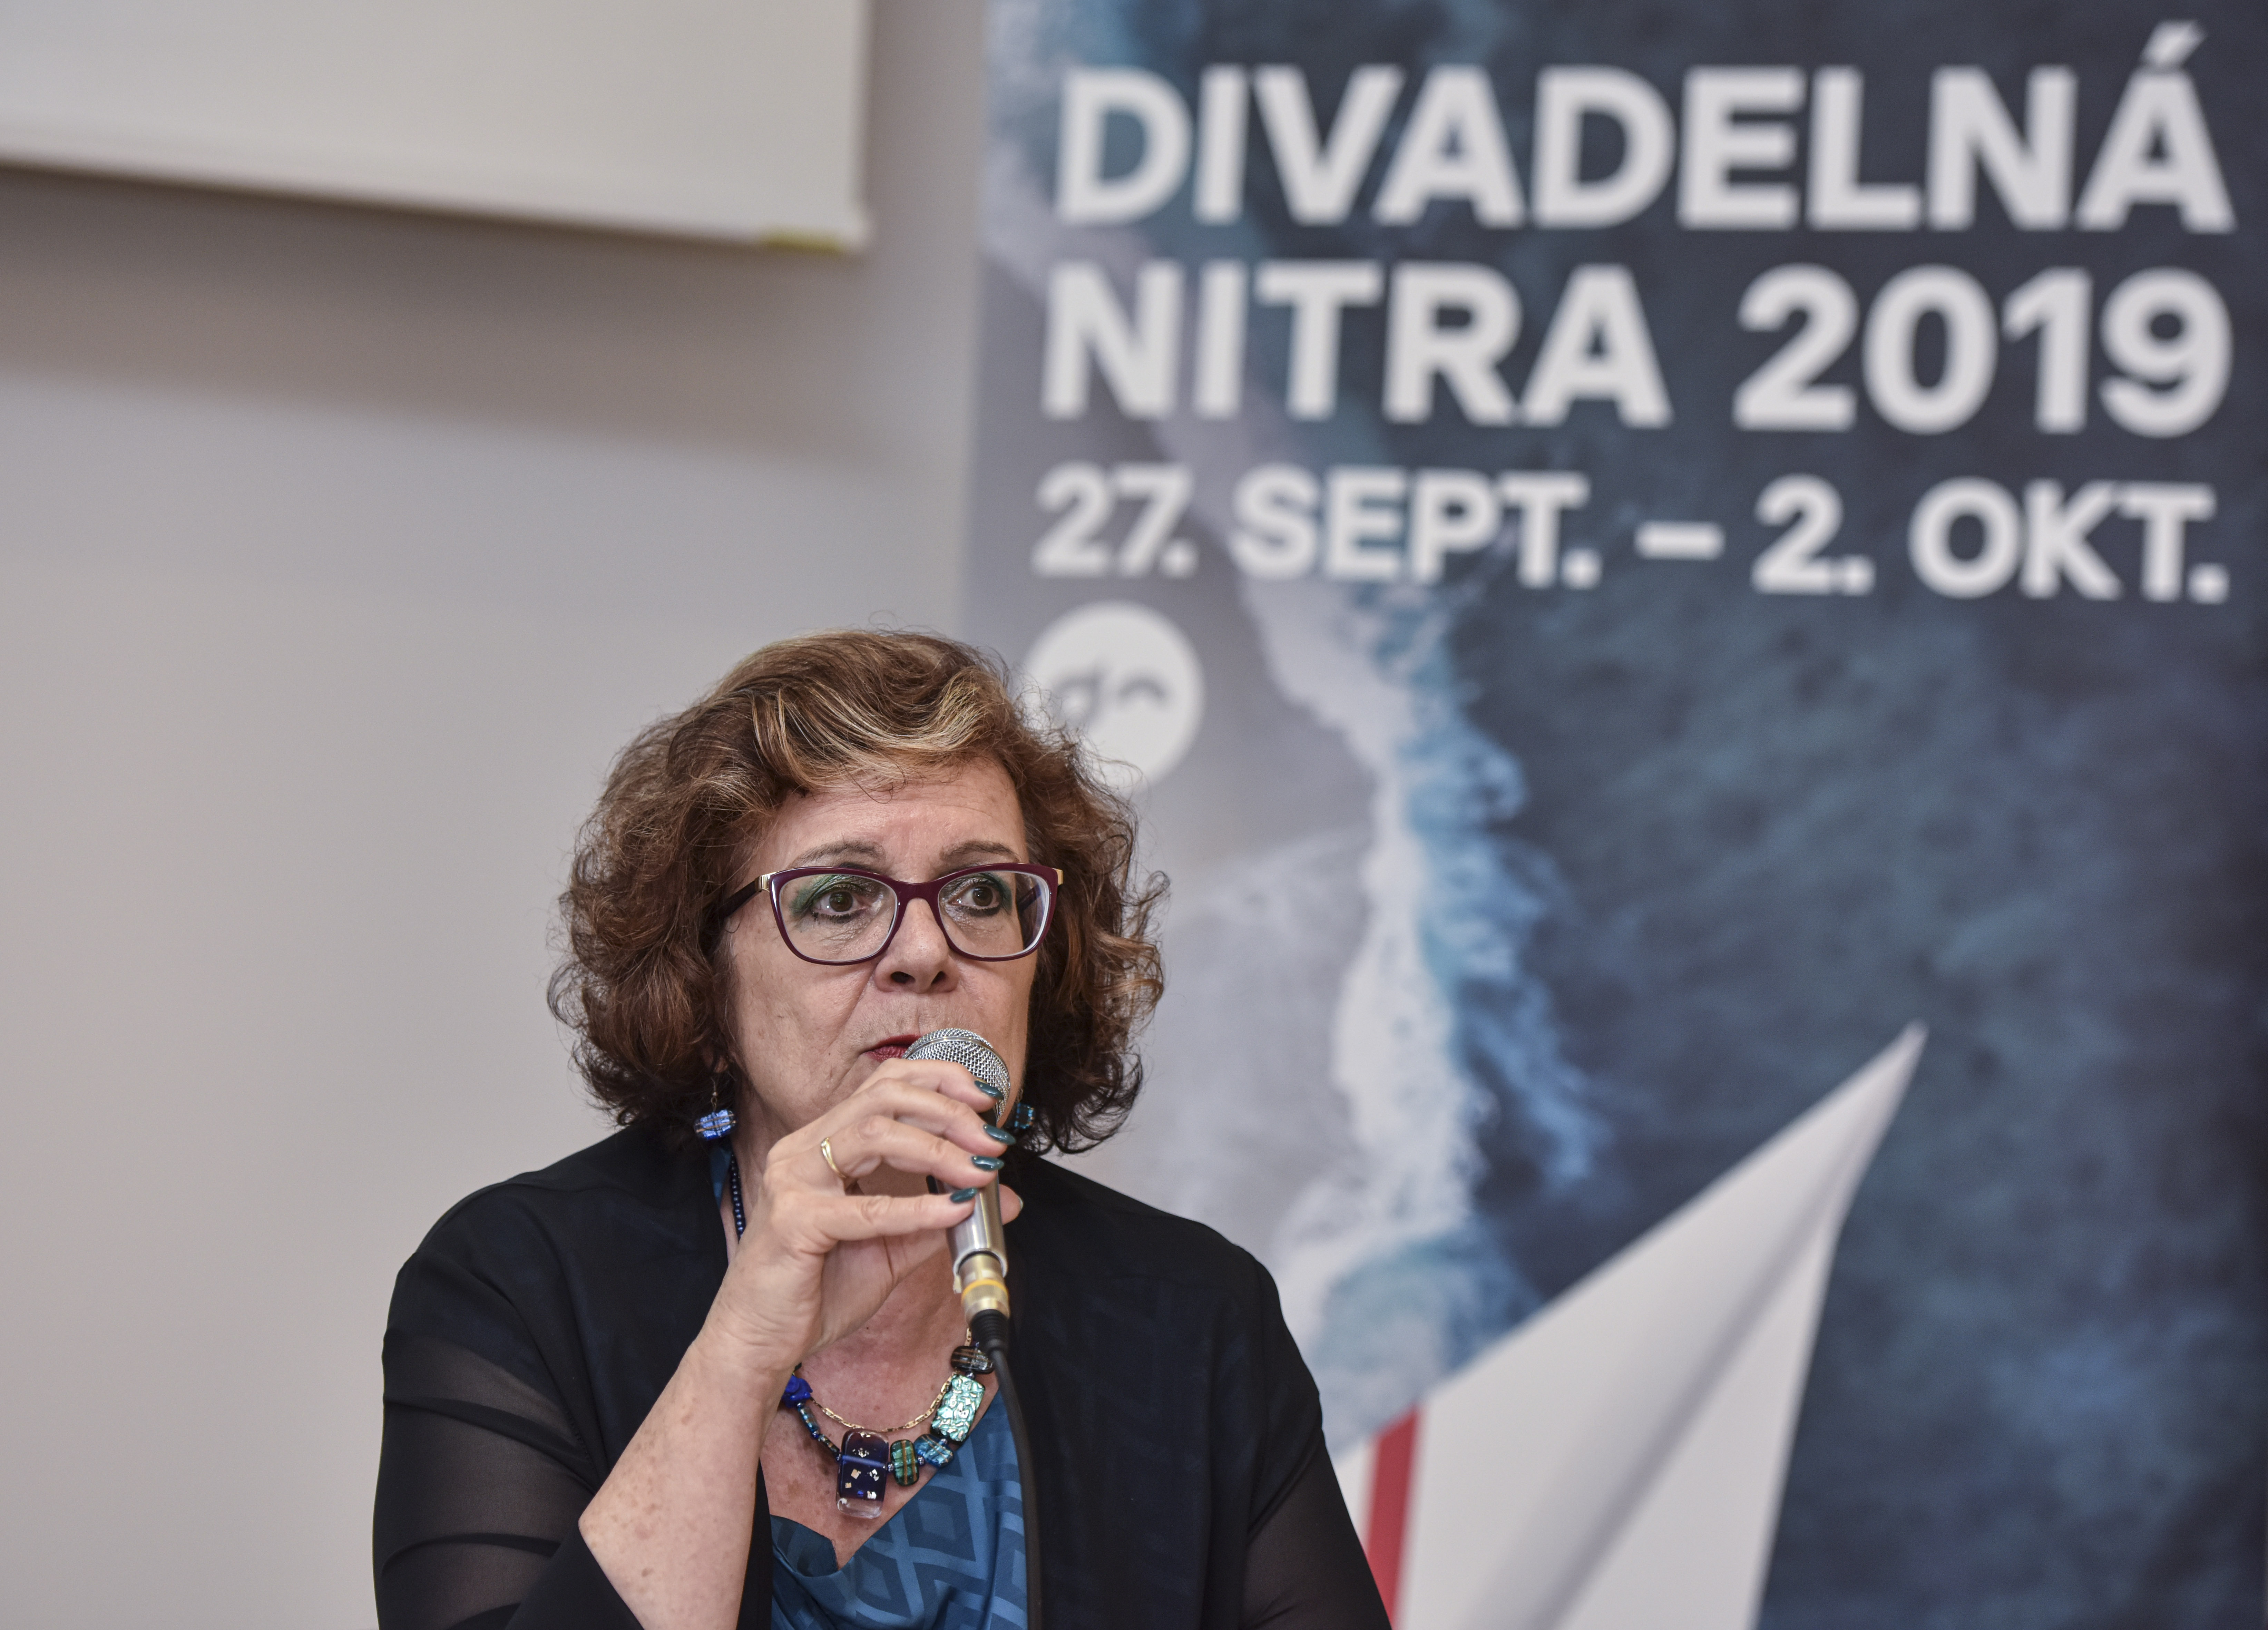 Na snímke riaditeľka medzinárodného festivalu Divadelná Nitra Darina Kárová počas tlačovej konferencie k 28. ročníku festivalu, ktorý sa uskutoční od 27. septembra 2019 do 2. októbra 2019 v Nitre.